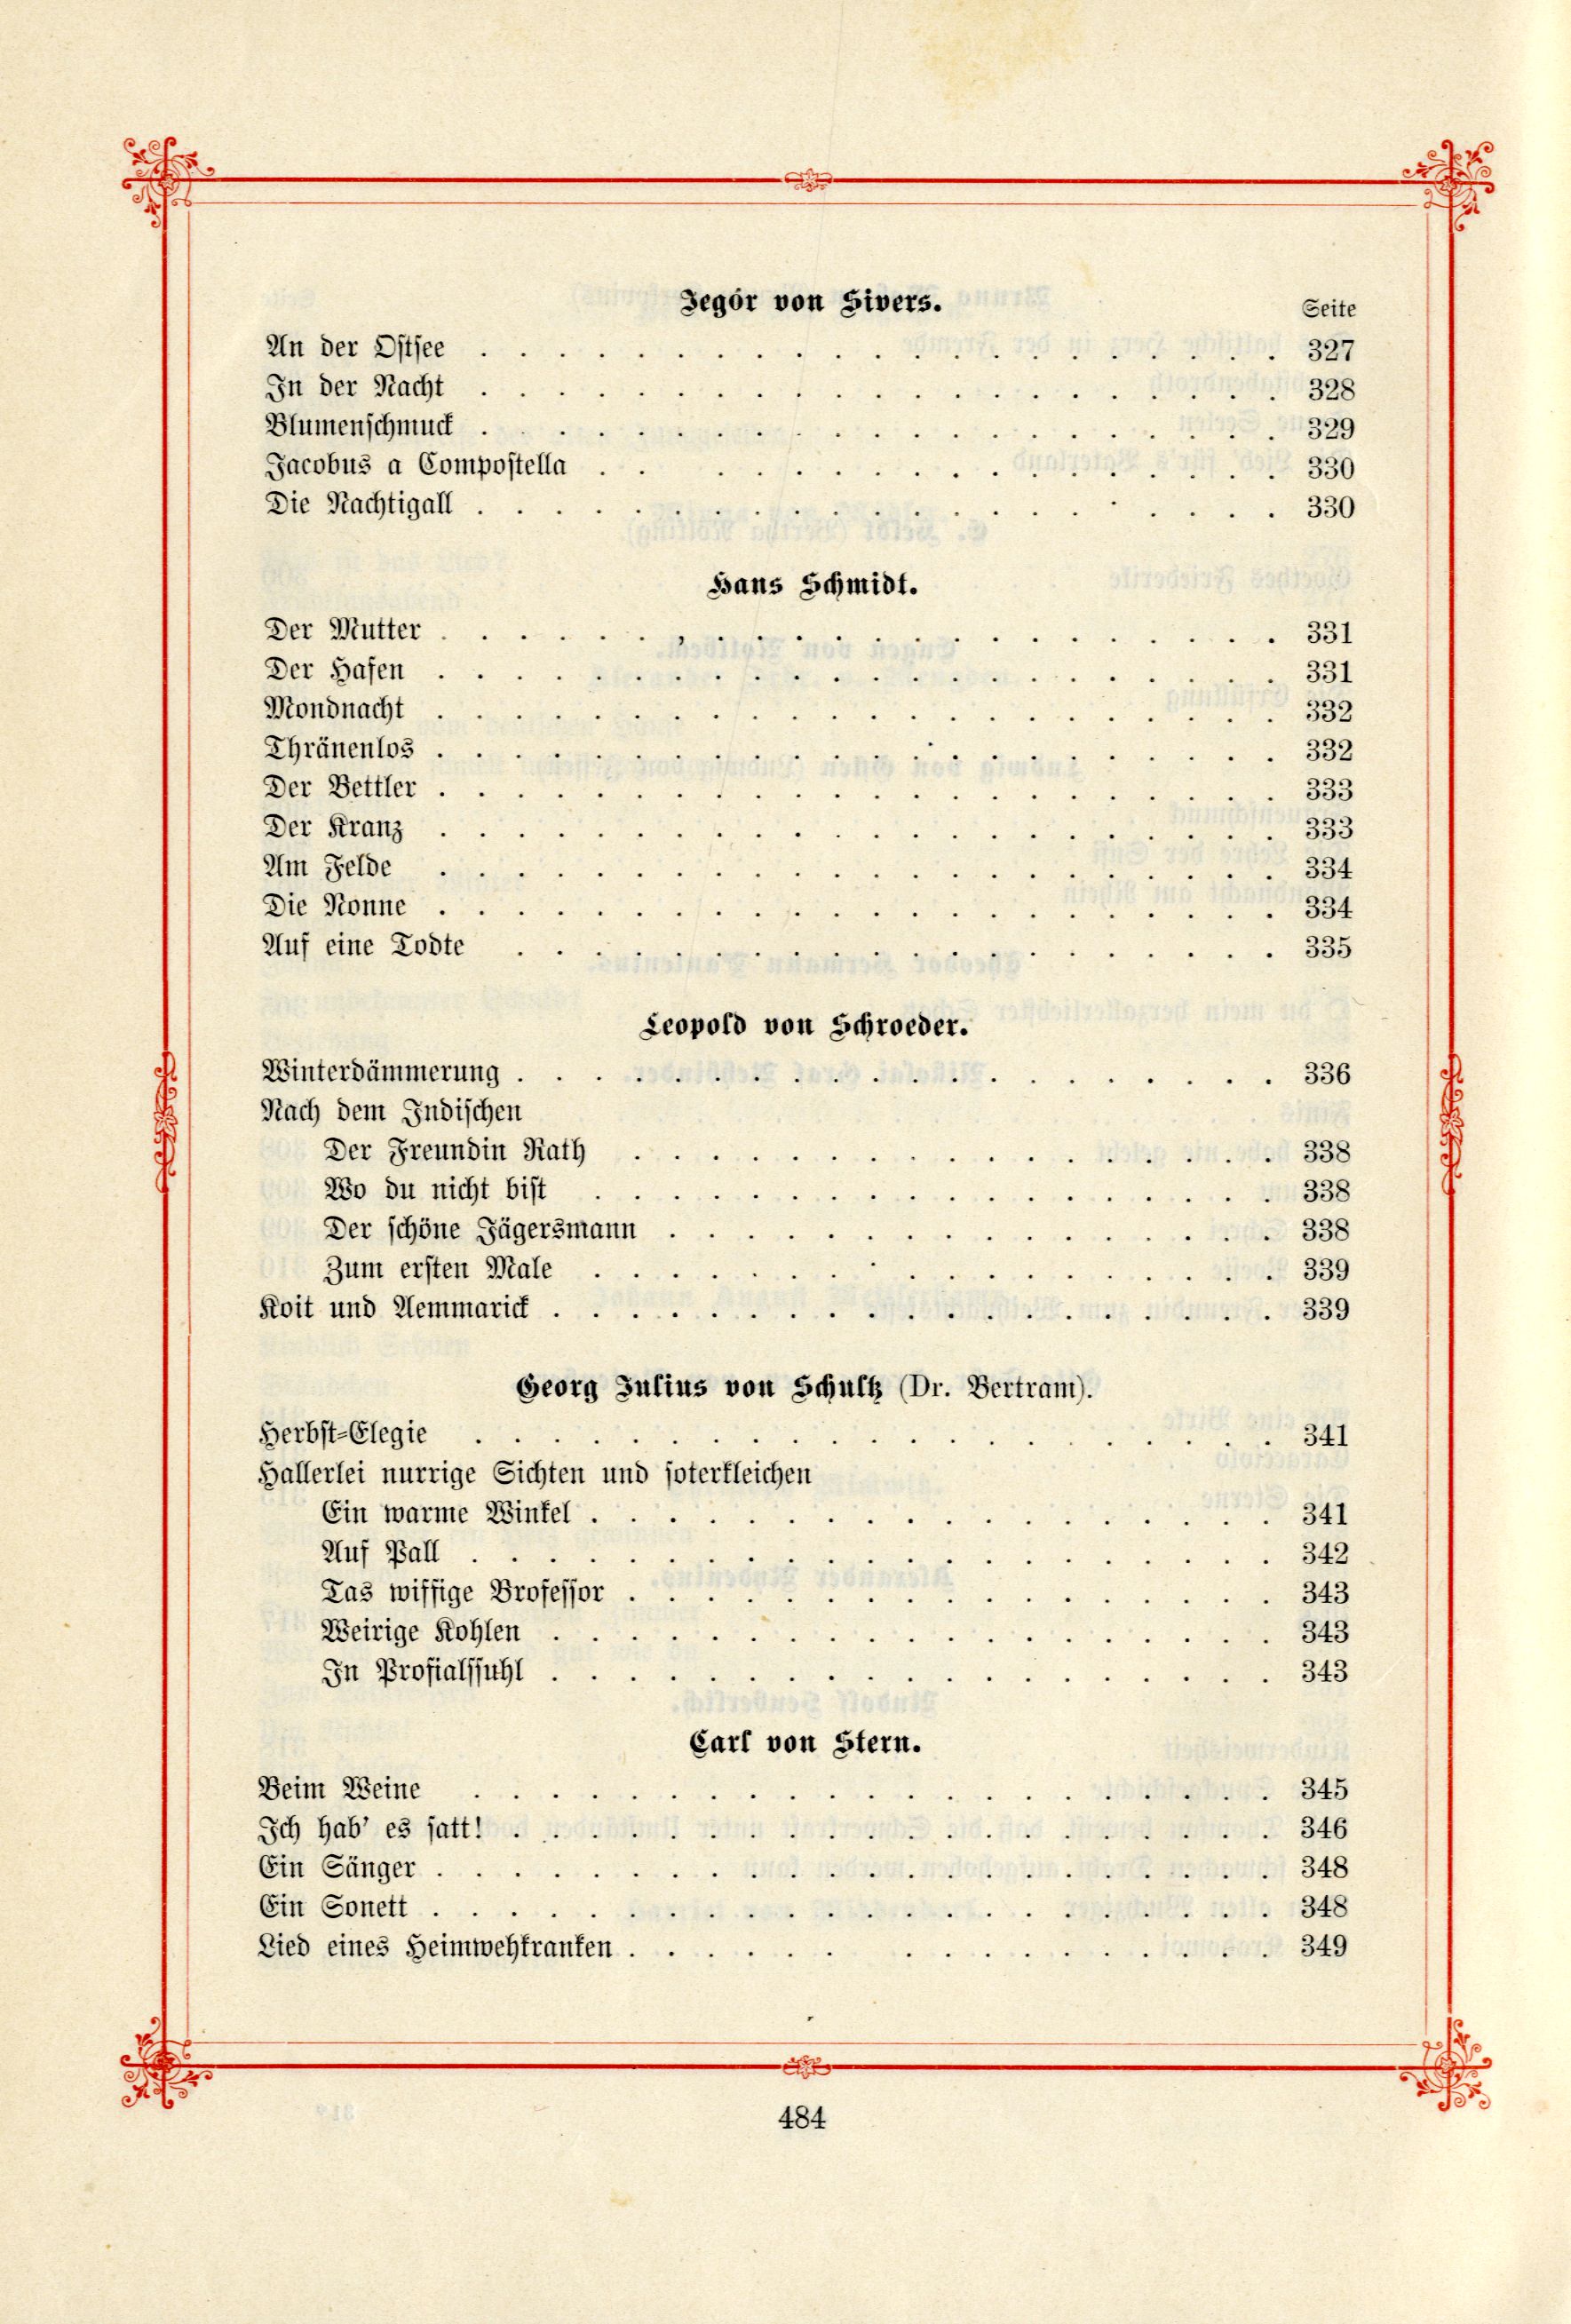 Das Baltische Dichterbuch (1895) | 530. (484) Table of contents